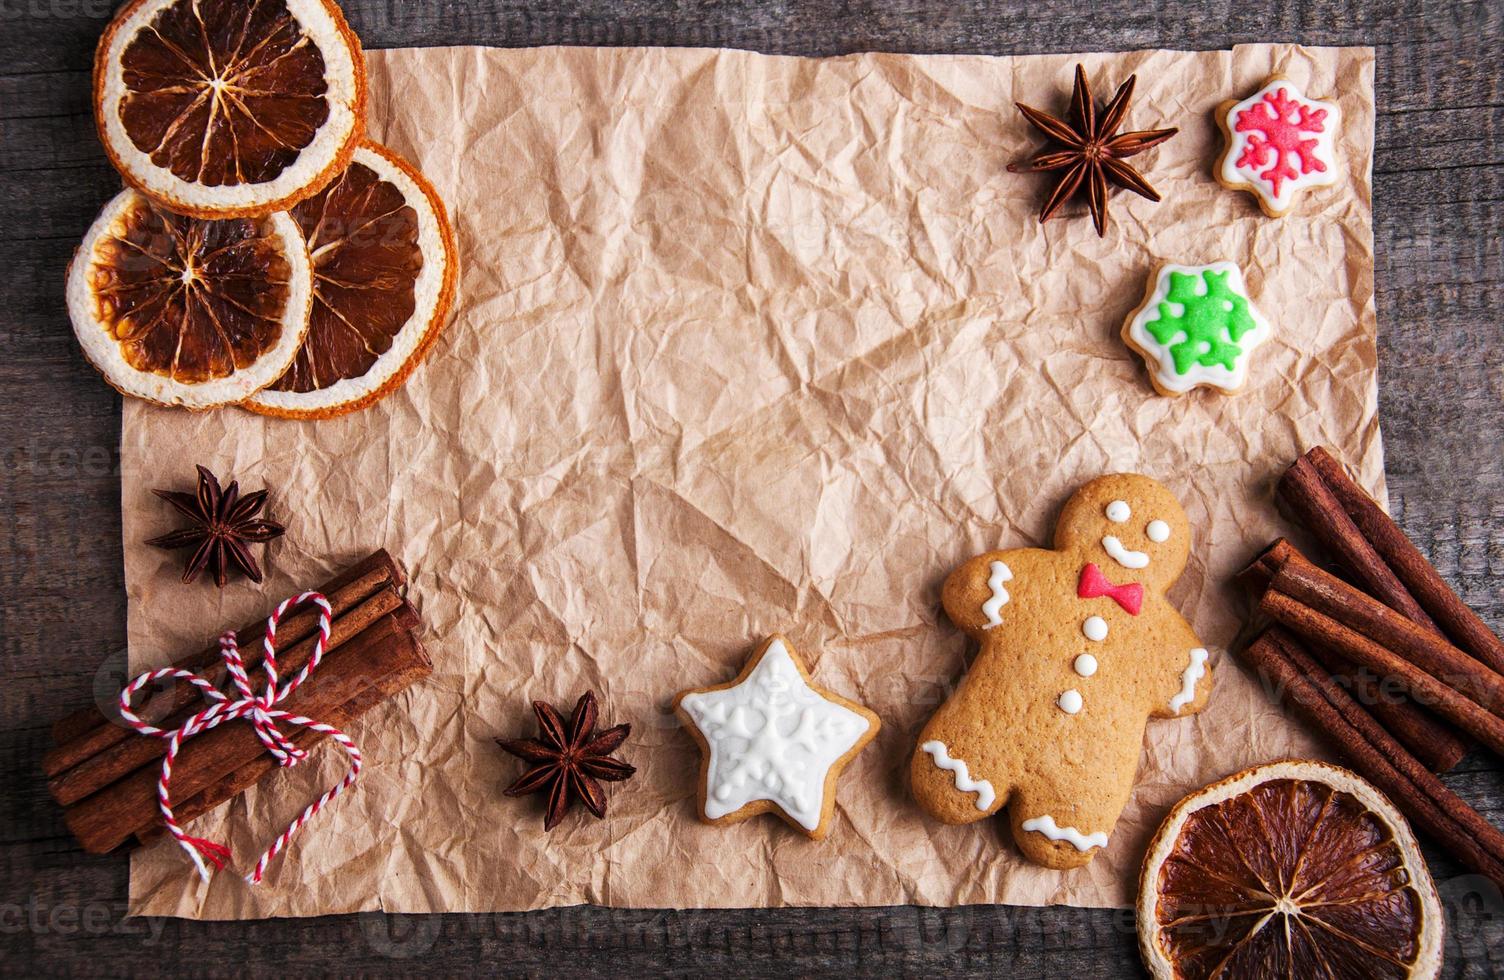 galletas navideñas de jengibre y miel de colores foto